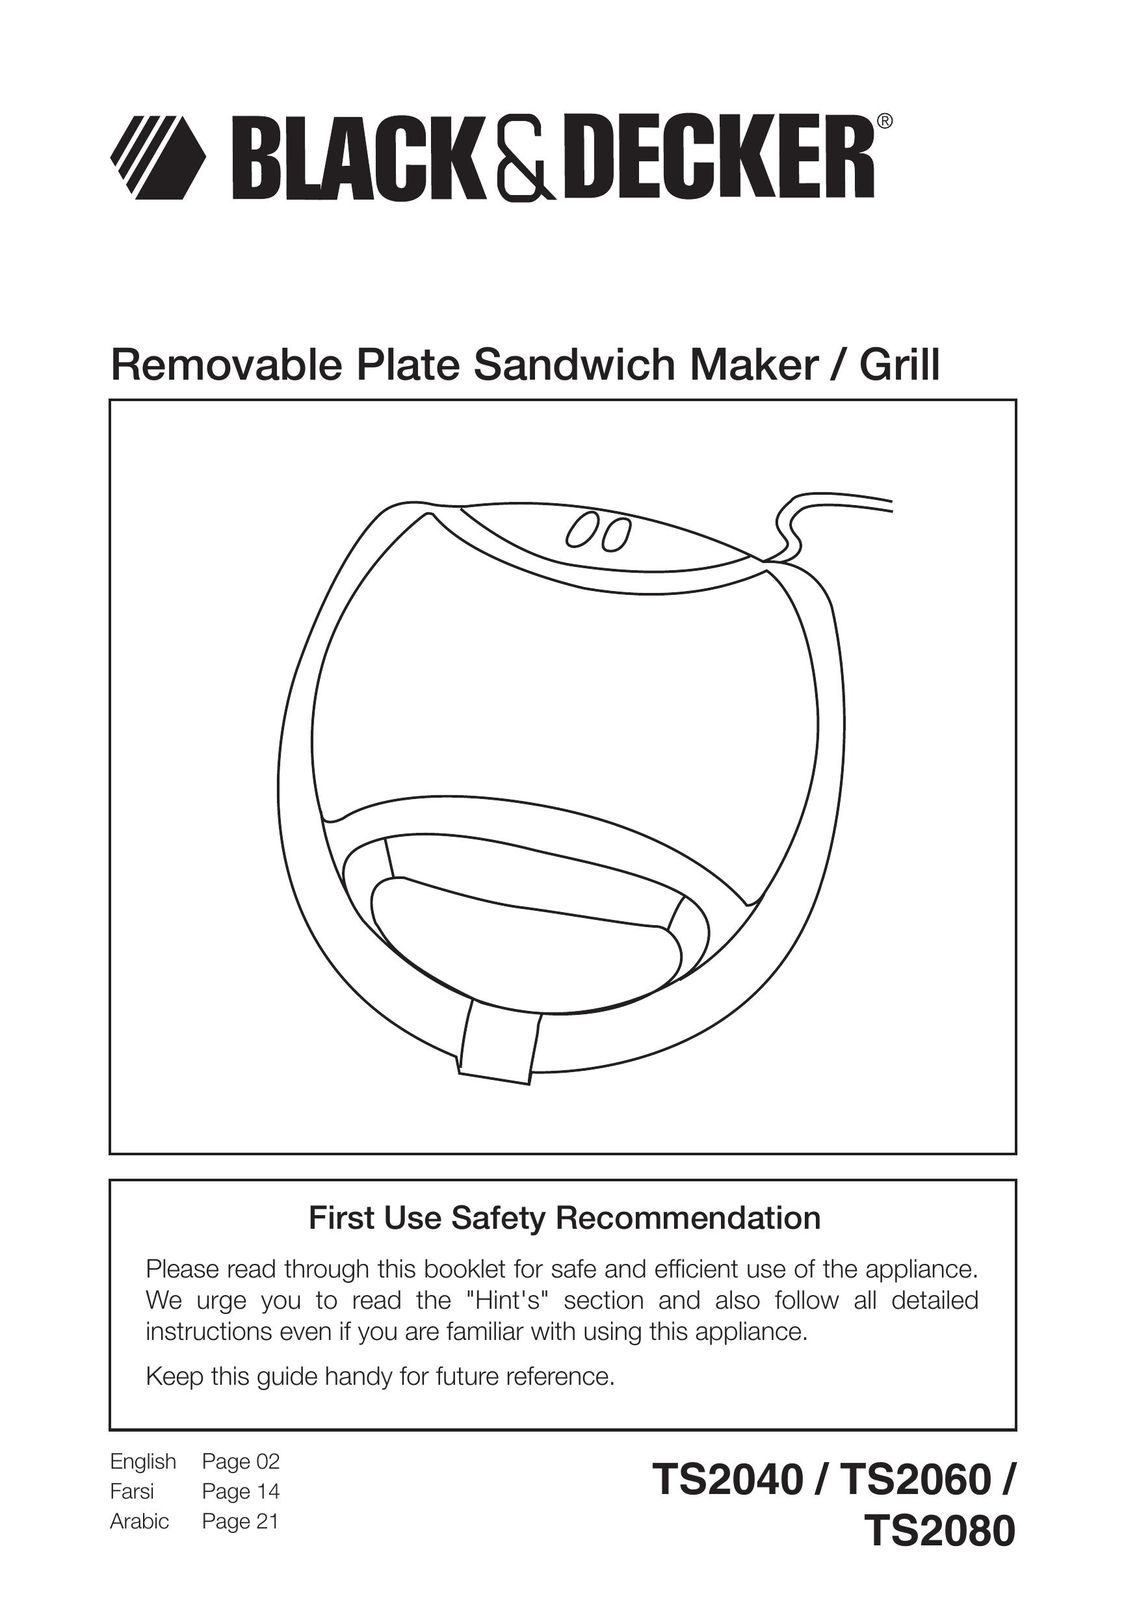 Black & Decker TS2060 Kitchen Grill User Manual